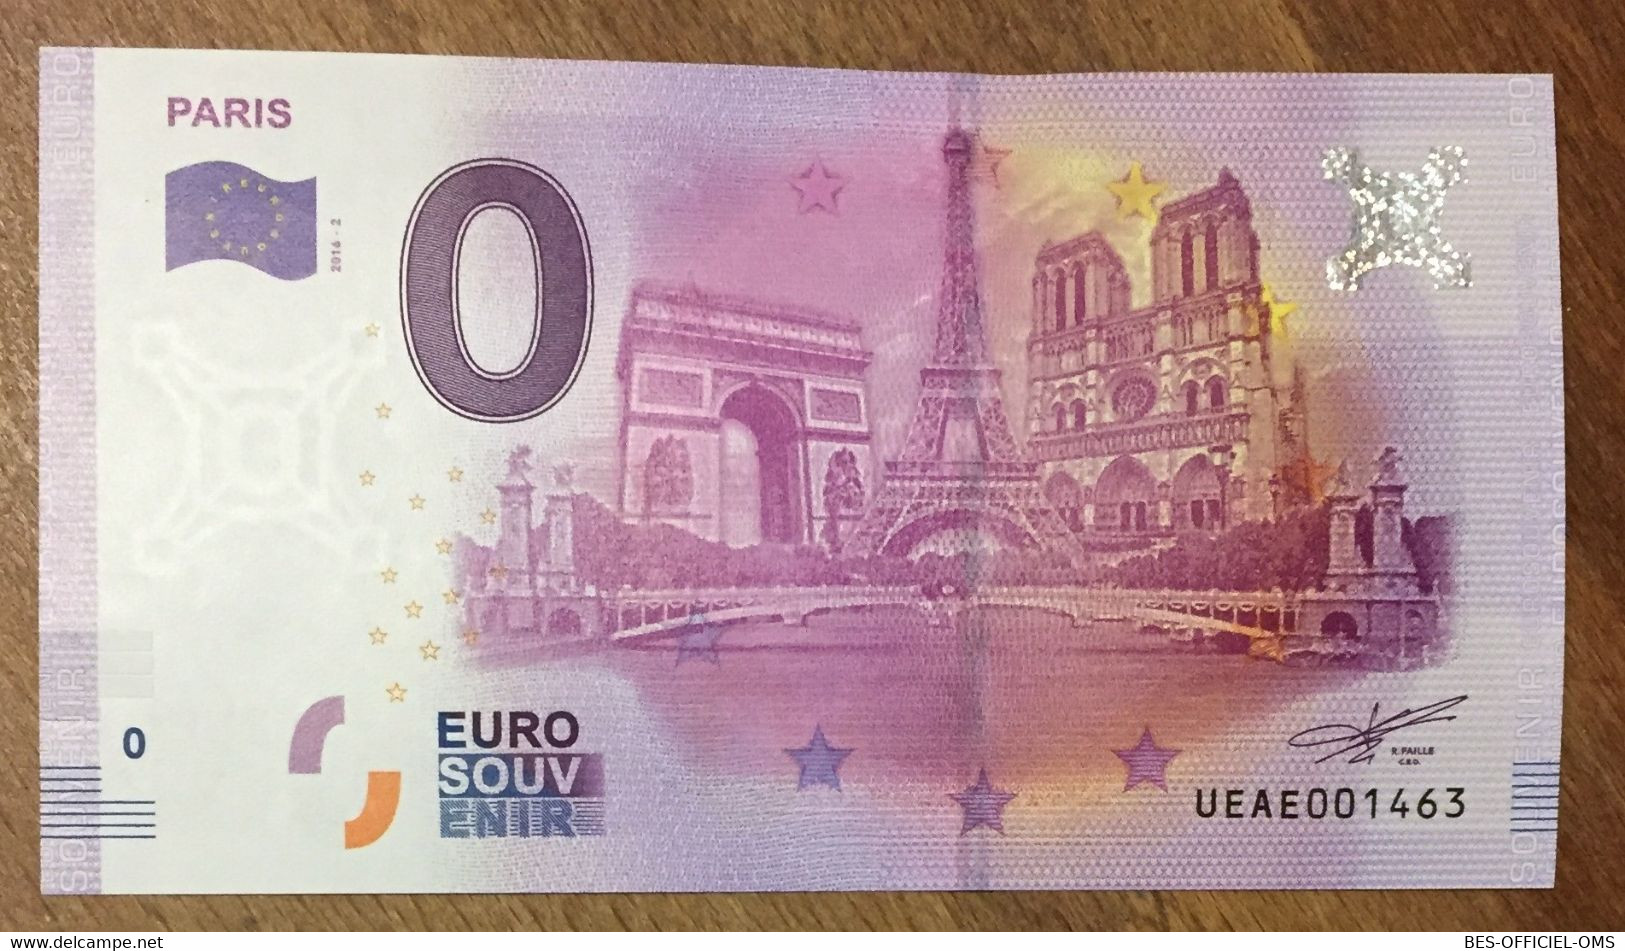 2016 BILLET 0 EURO SOUVENIR DPT 75 PARIS TOUR EIFFEL AU CENTRE ZERO 0 EURO SCHEIN BANKNOTE PAPER MONEY - Private Proofs / Unofficial